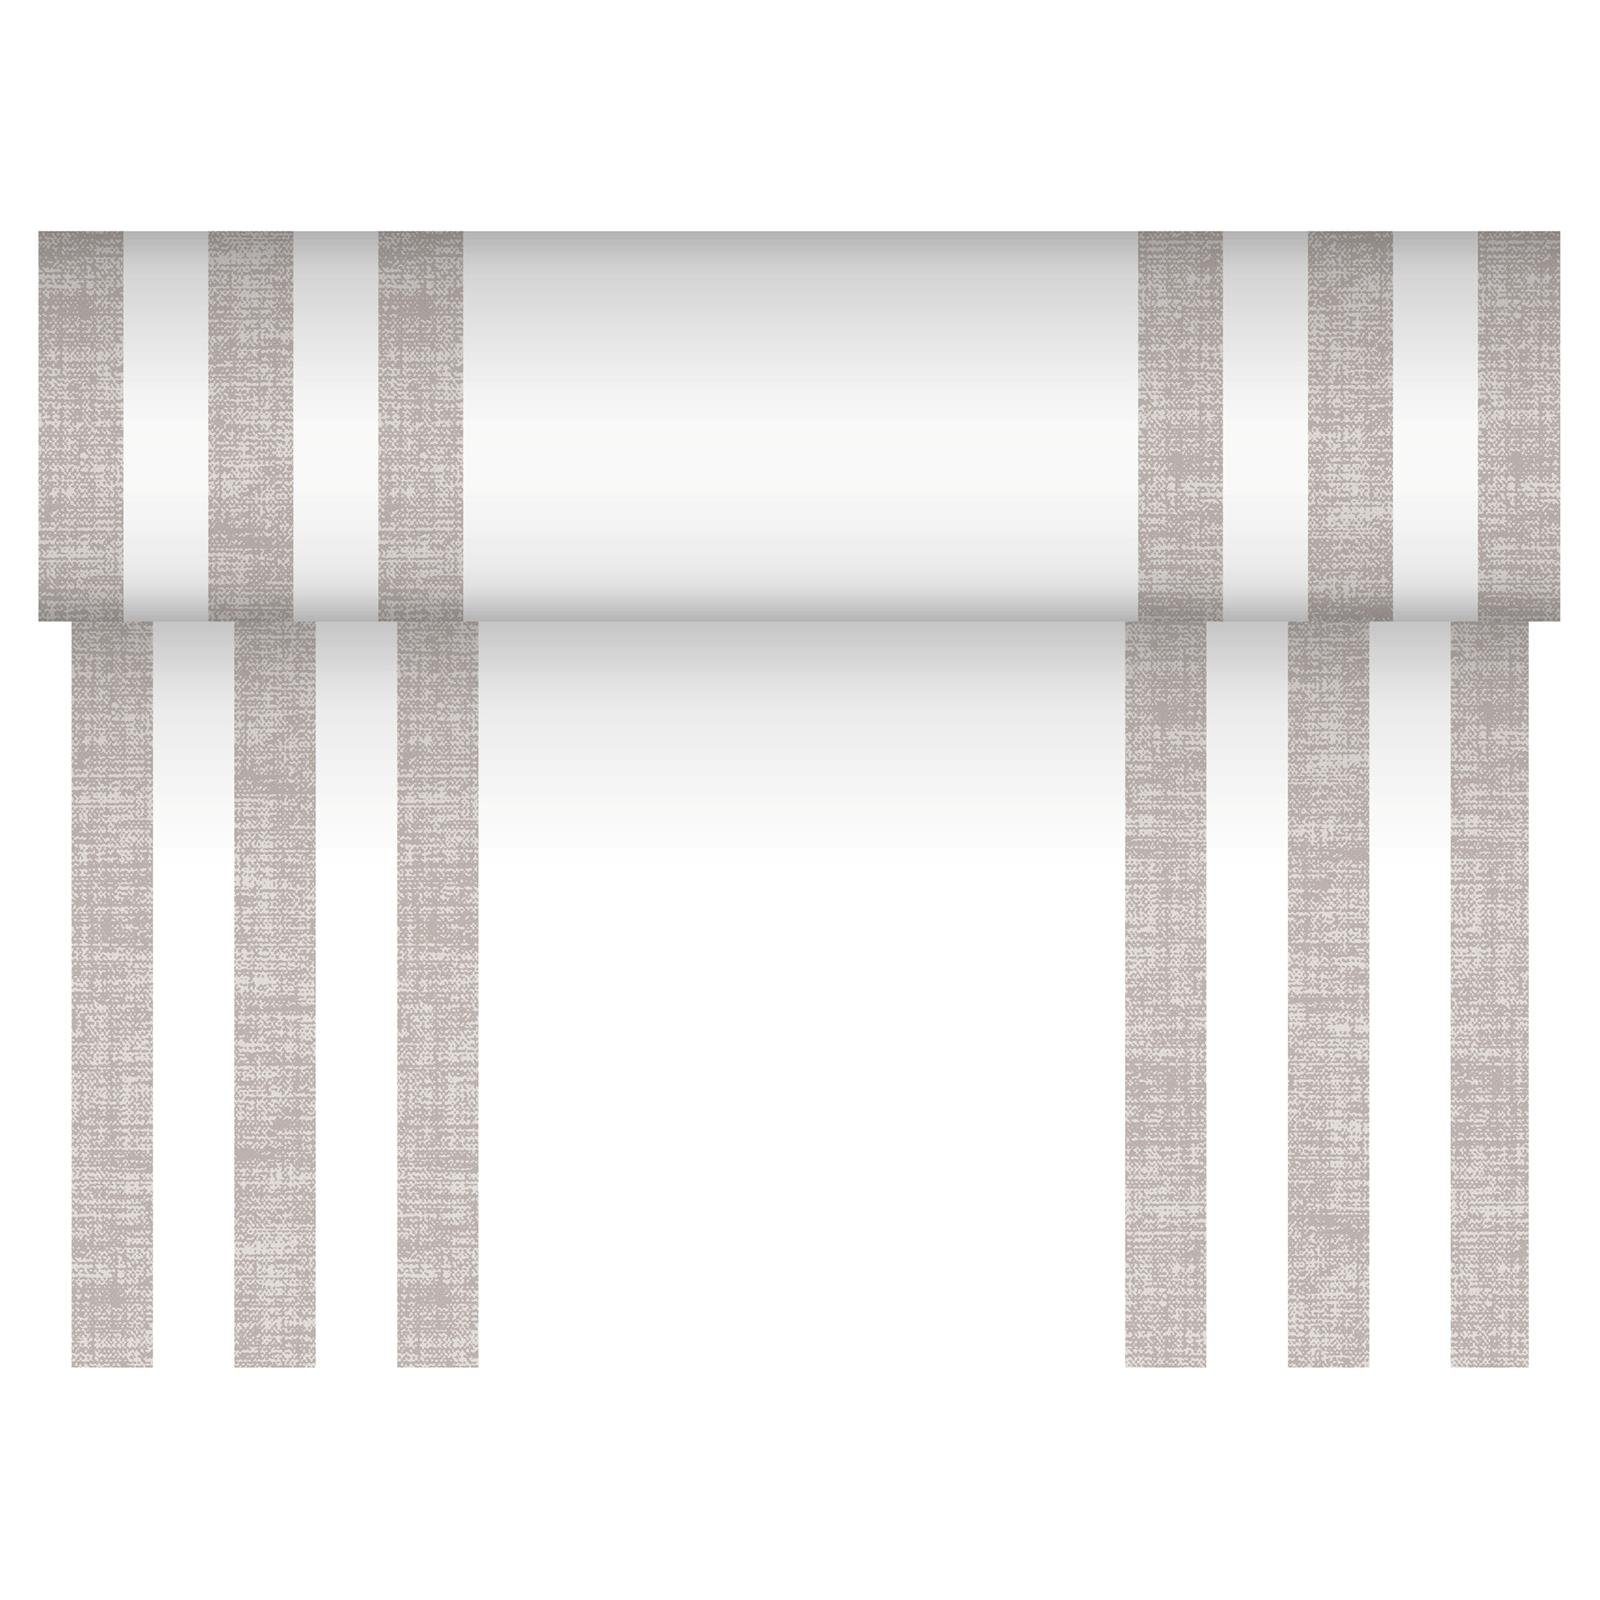 PAPSTAR Tischläufer Tischläufer PV-Tissue Mix ROYAL Collection 24 m x 40 cm grau Lines